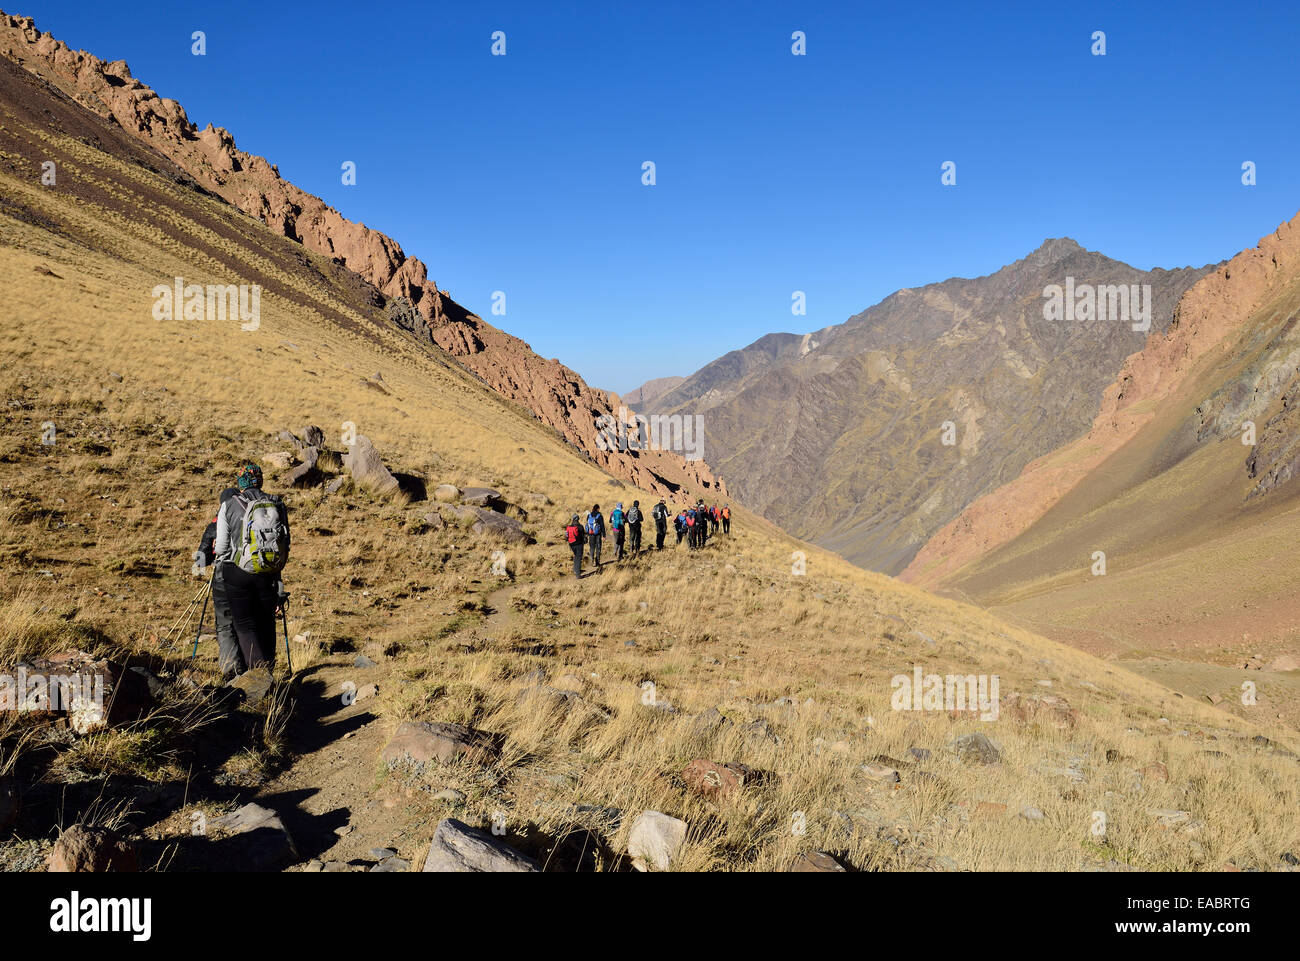 L'Iran province de Mazandaran montagnes Alborz Alam Kuh salon Takht-e Massif de Suleyman groupe de personnes randonnées sur plateau Hezarsham Banque D'Images